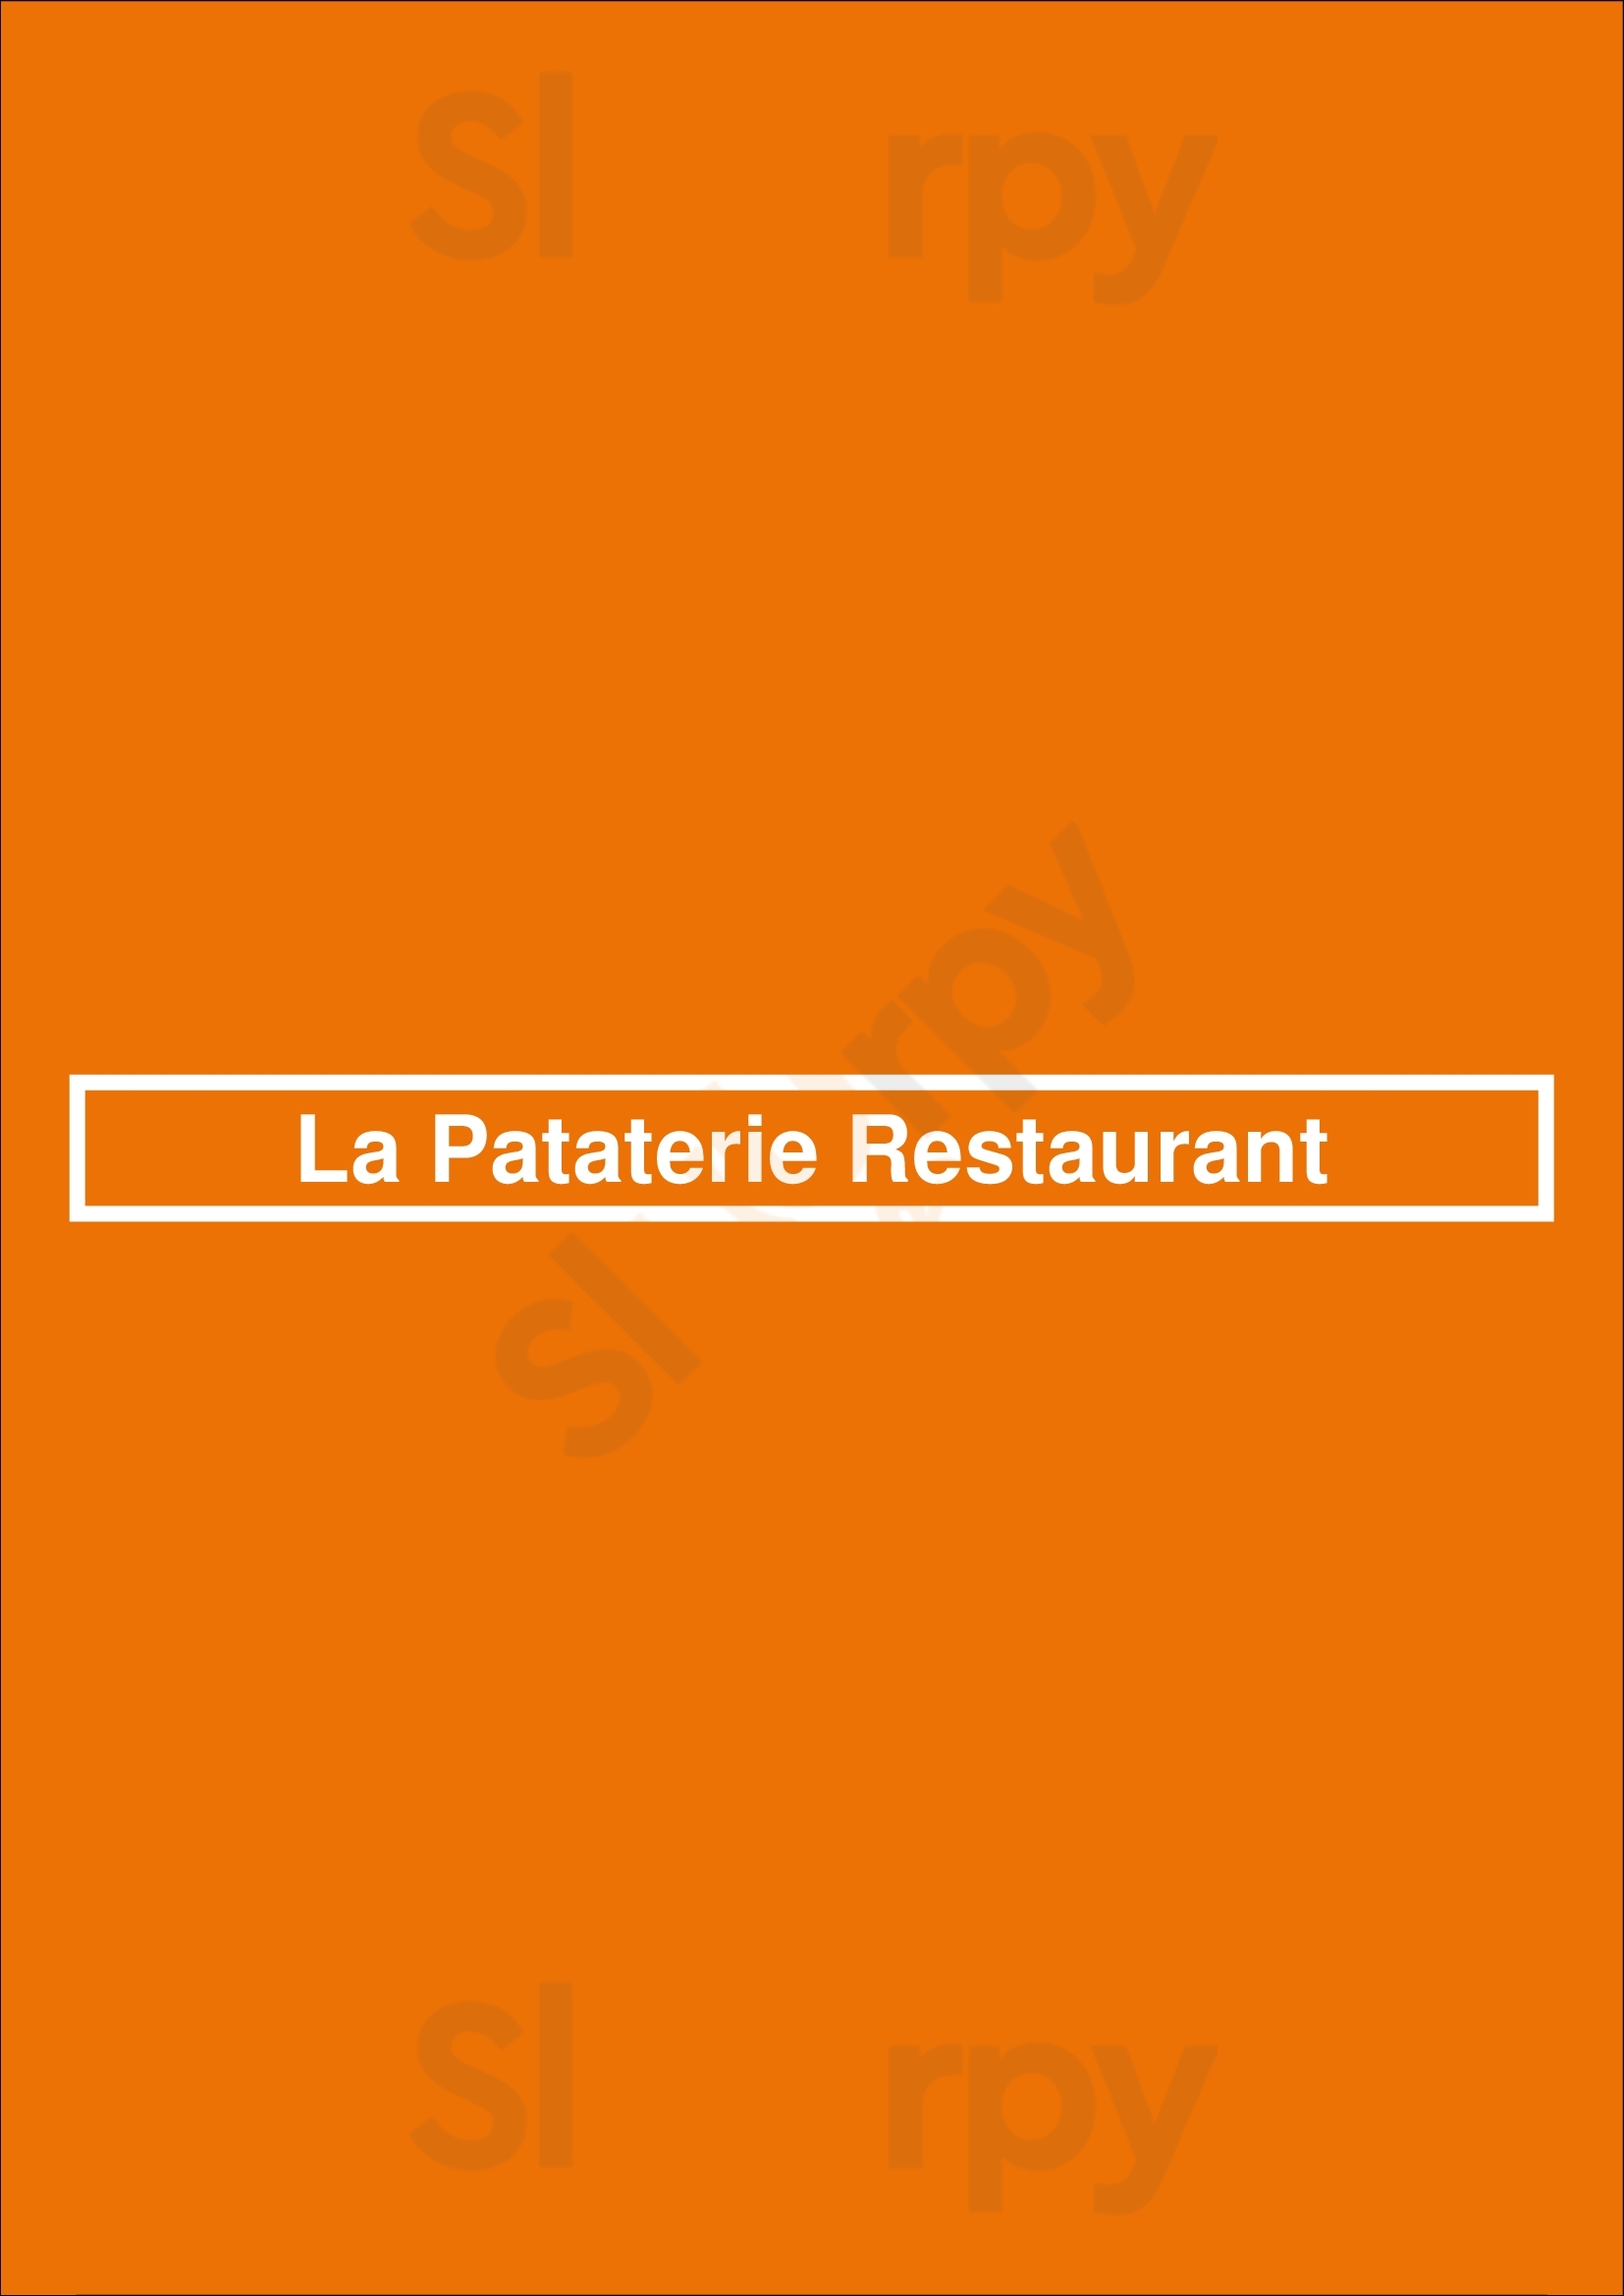 La Pataterie Restaurant Limoges Menu - 1